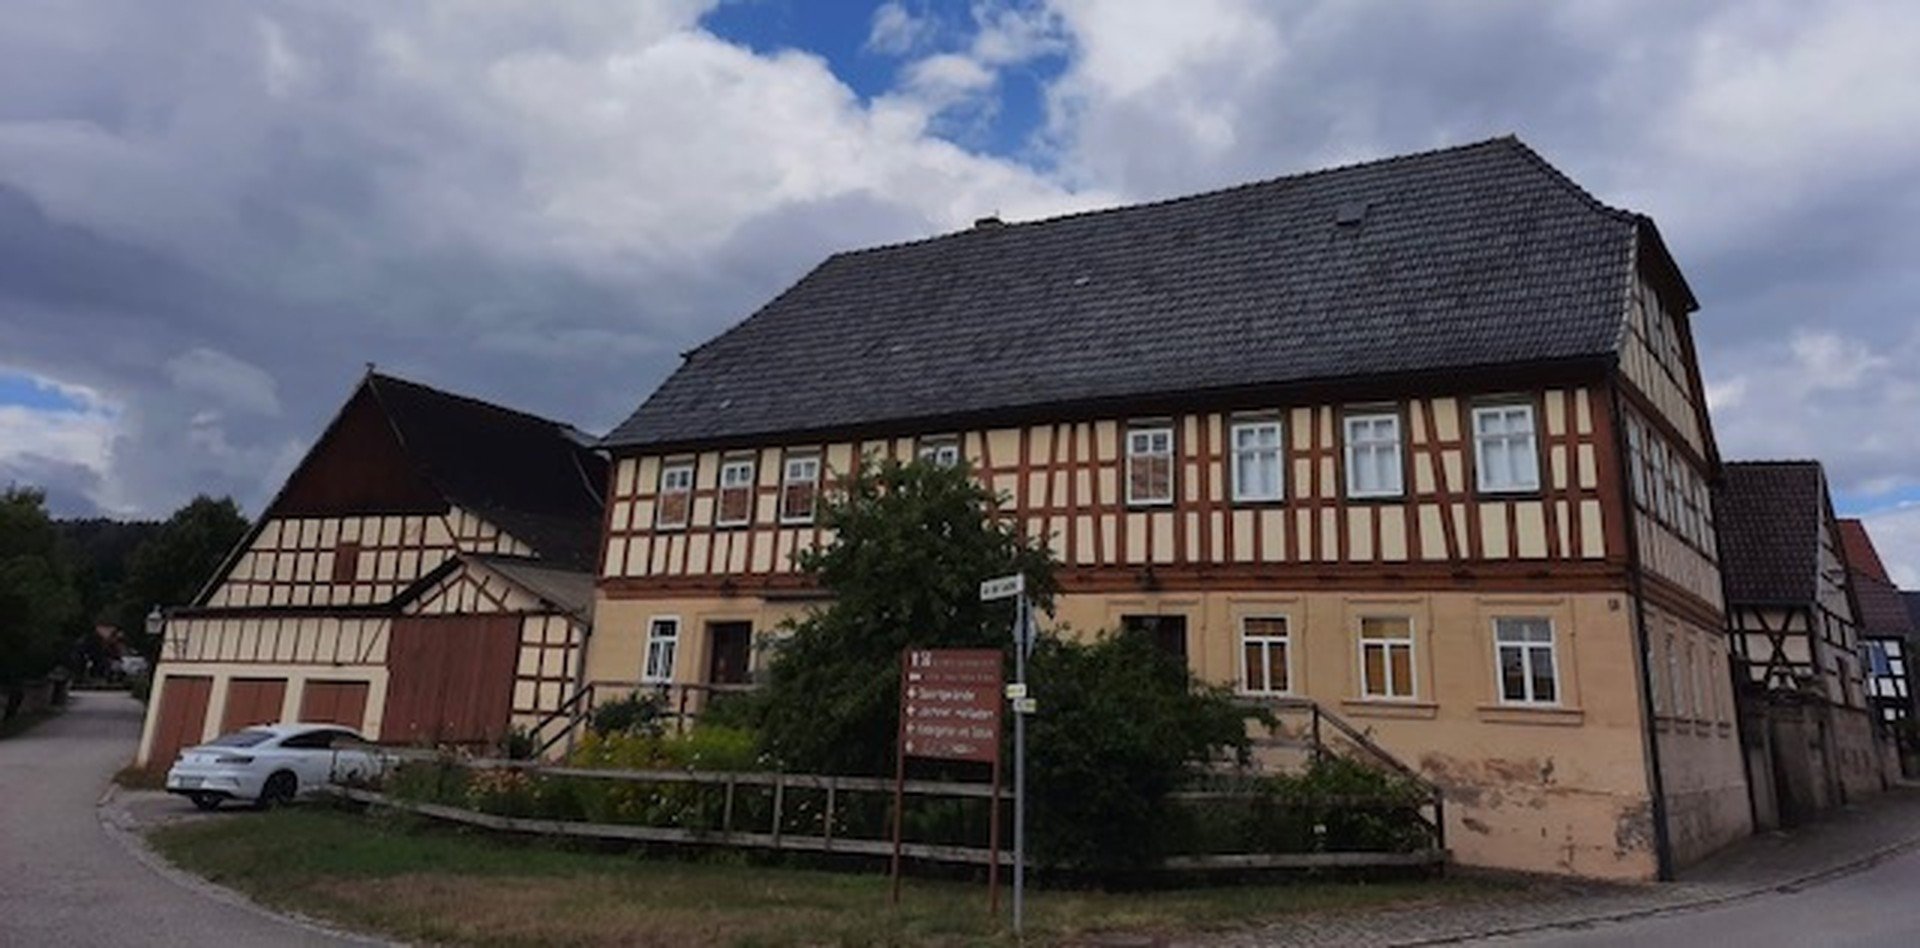 Historischer Bauernhof von Erbengemeinschaft an Liebhaber*innen zu verkaufen